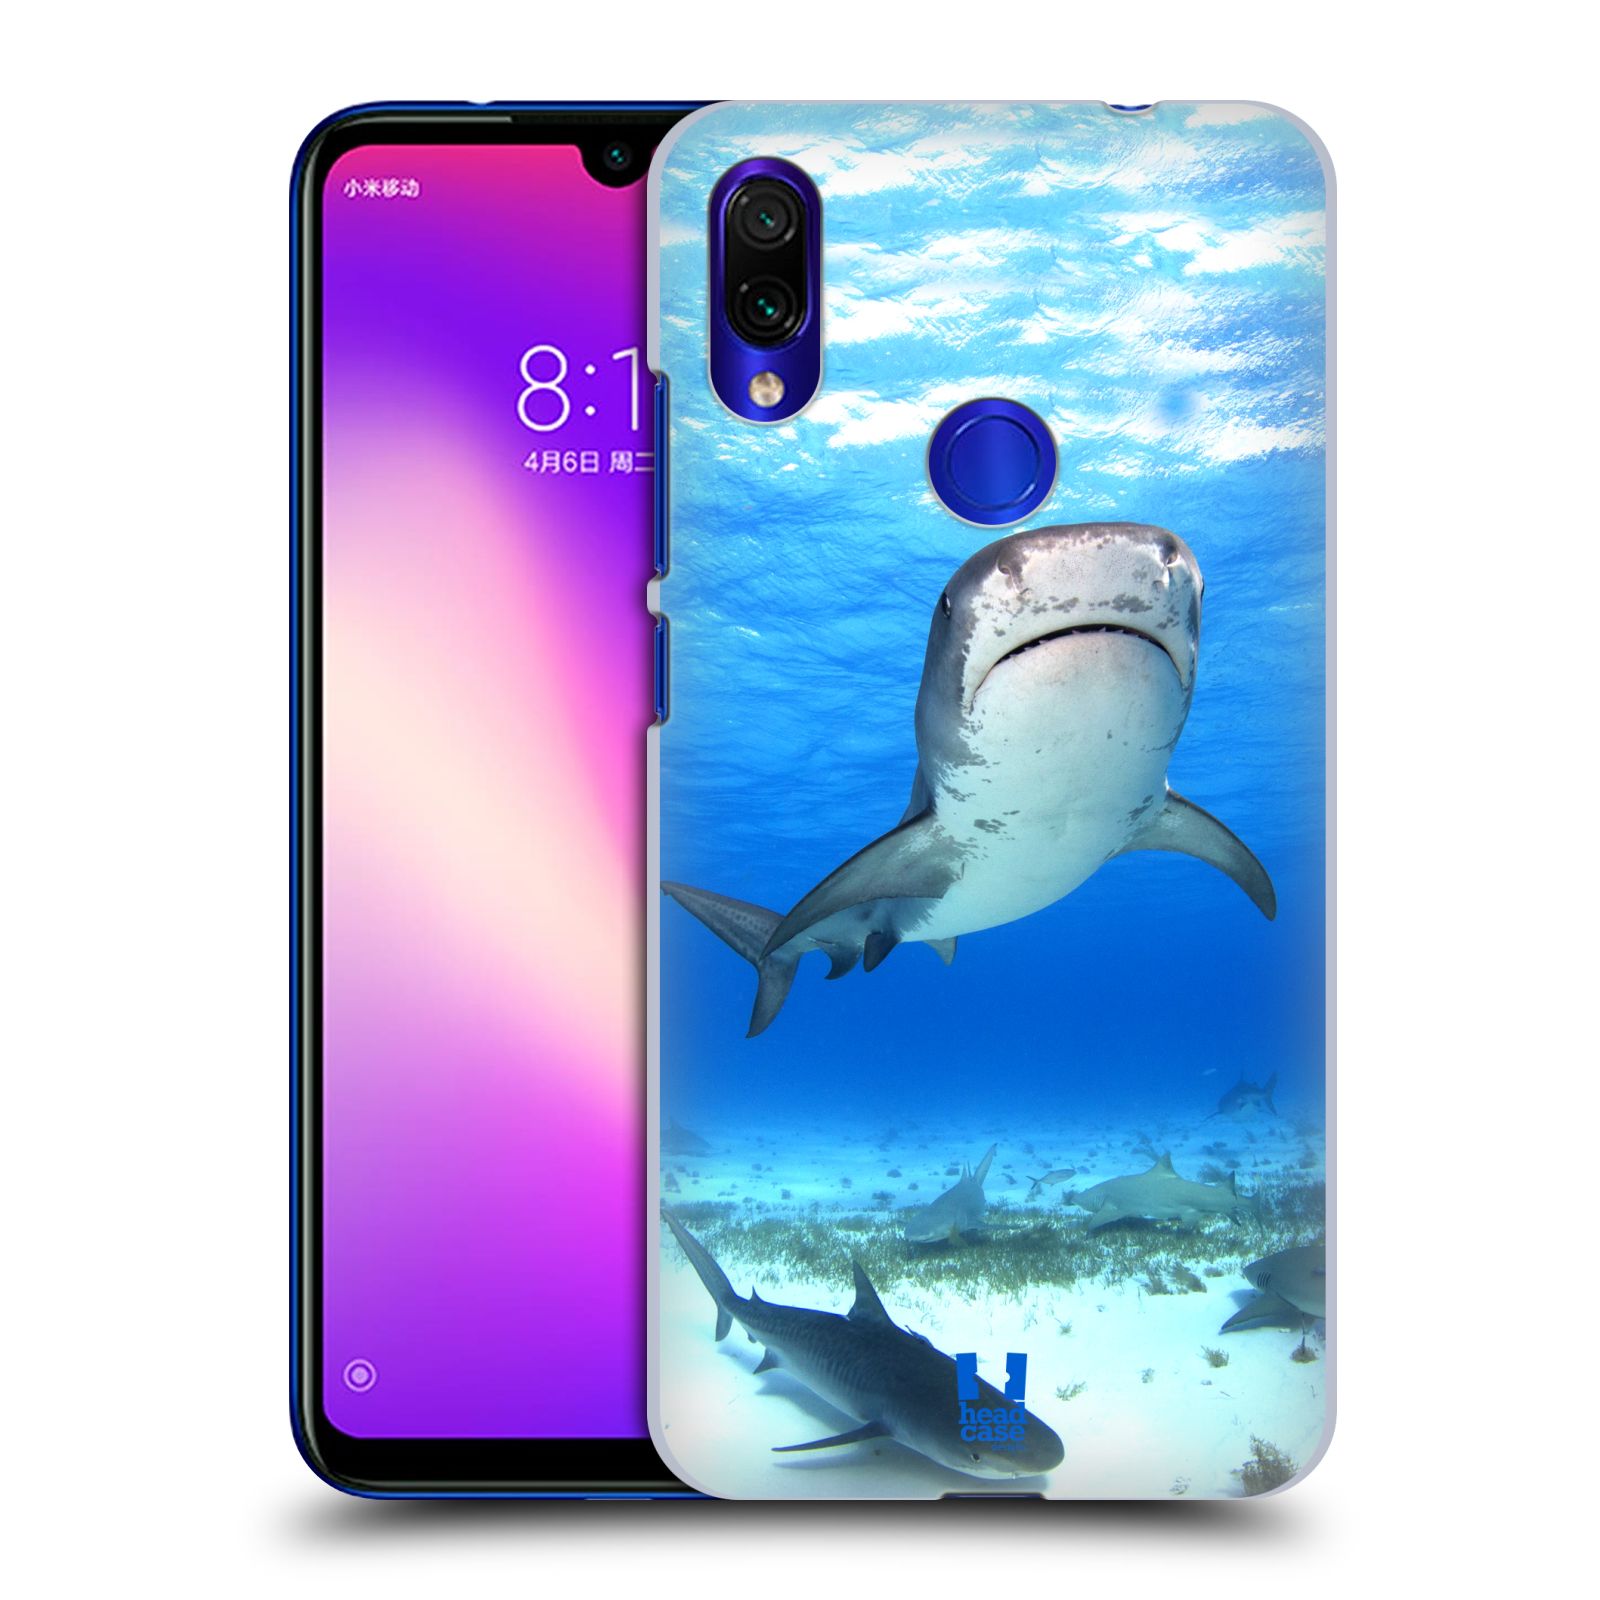 Pouzdro na mobil Xiaomi Redmi Note 7 - Head Case - vzor slavná zvířata foto žralok tygří